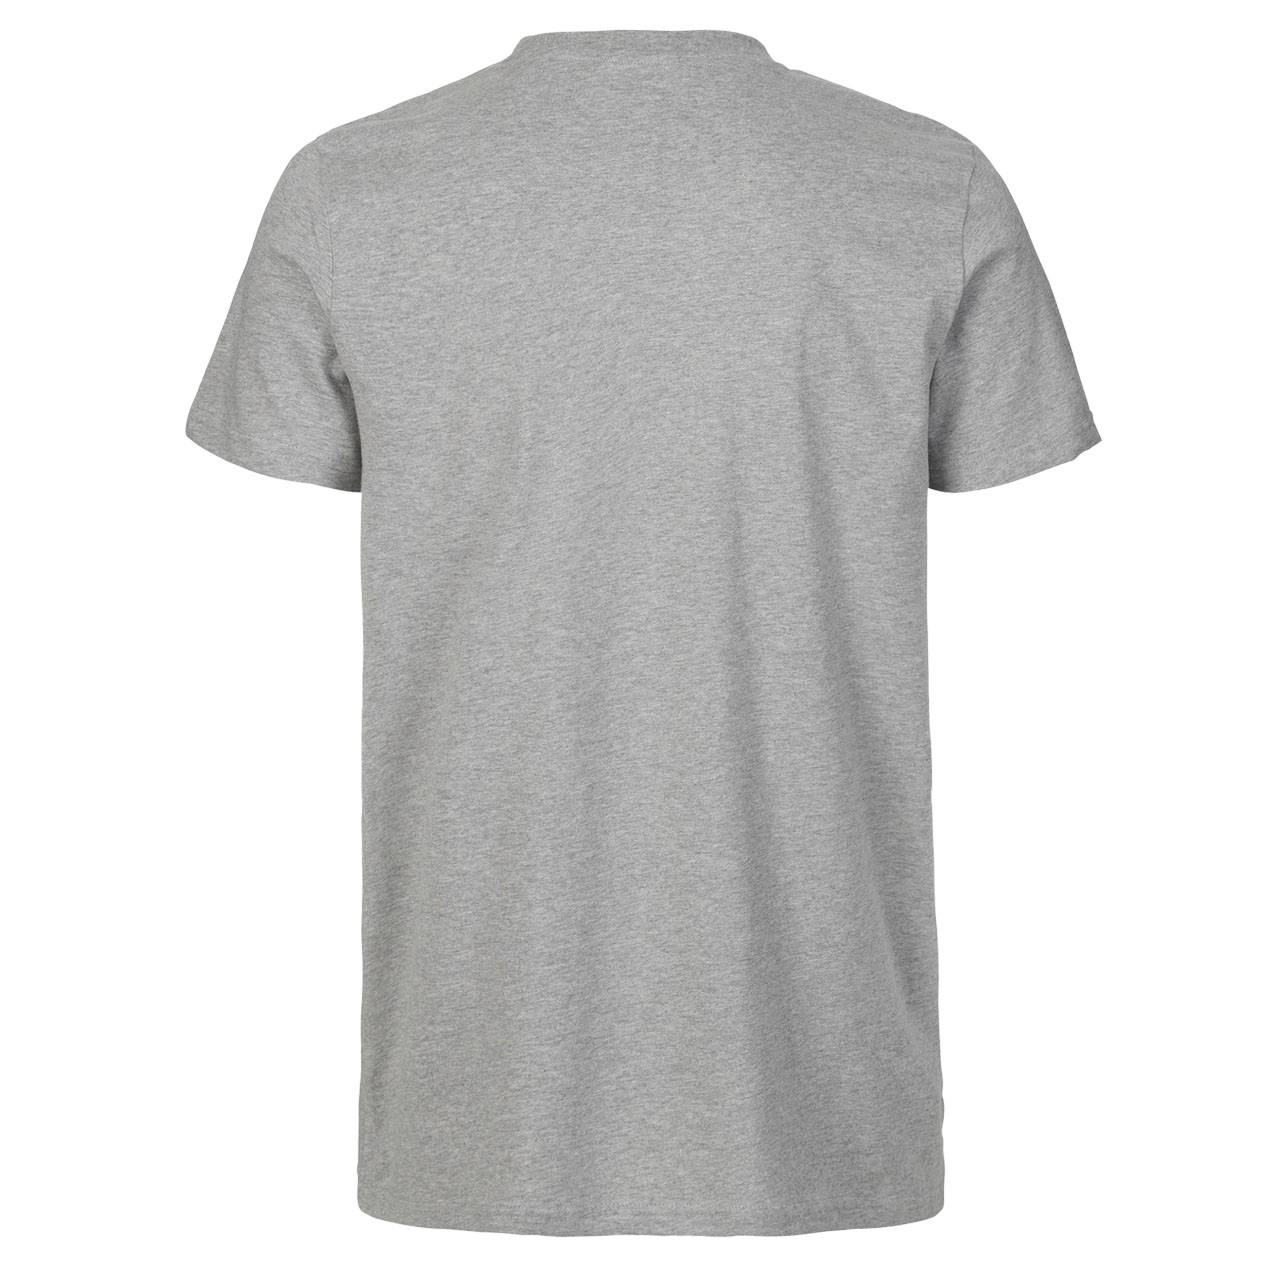 Neutral® Mens Fit T-Shirt - Bio-Baumwolle Sports Grey 2XL Sports Grey